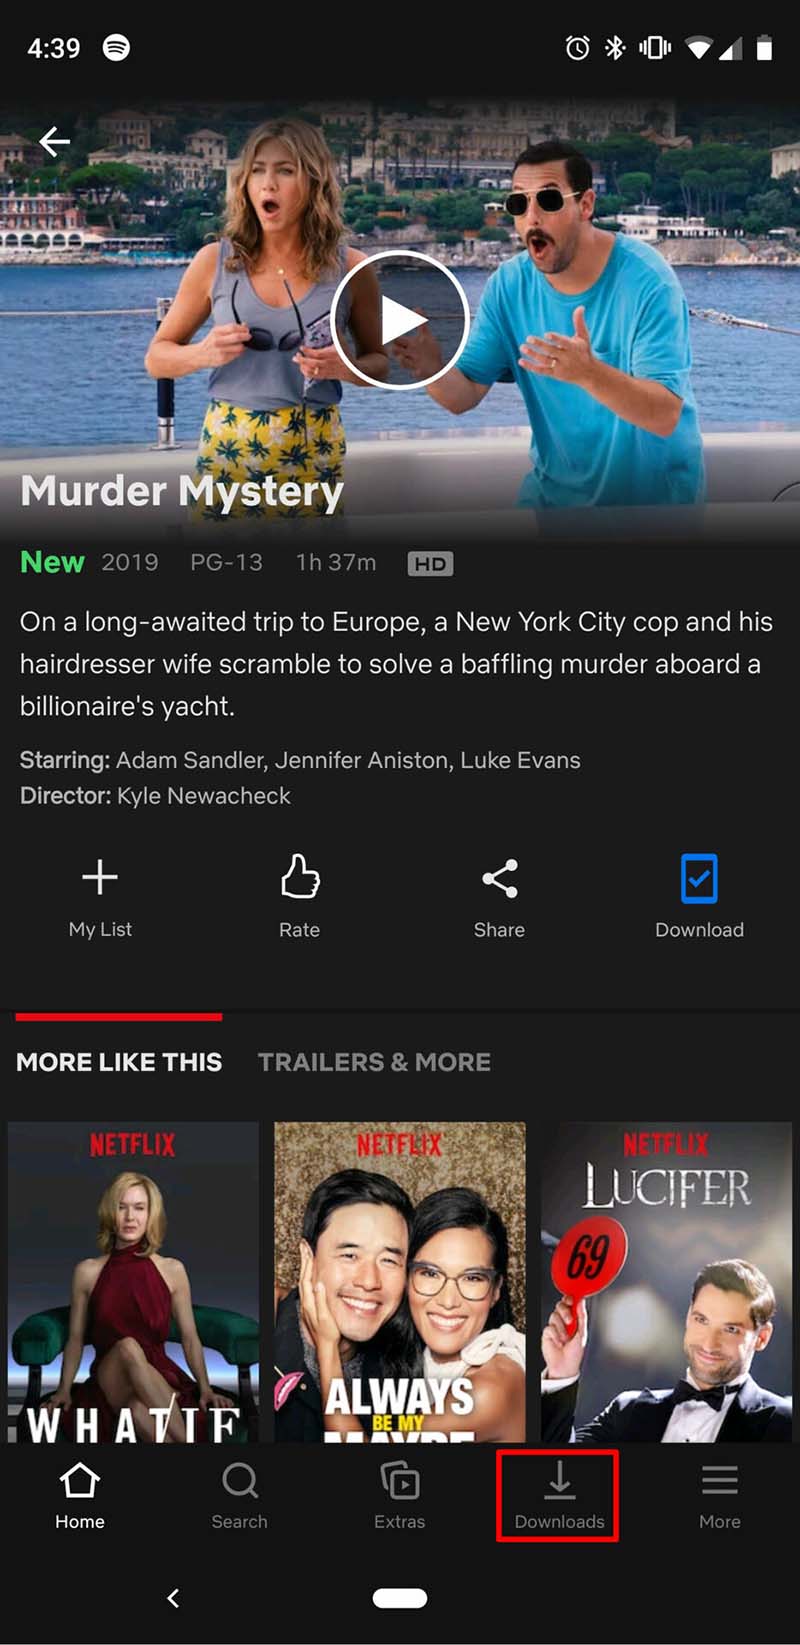 Hướng dẫn cách tải phim và TV Show trên Netflix